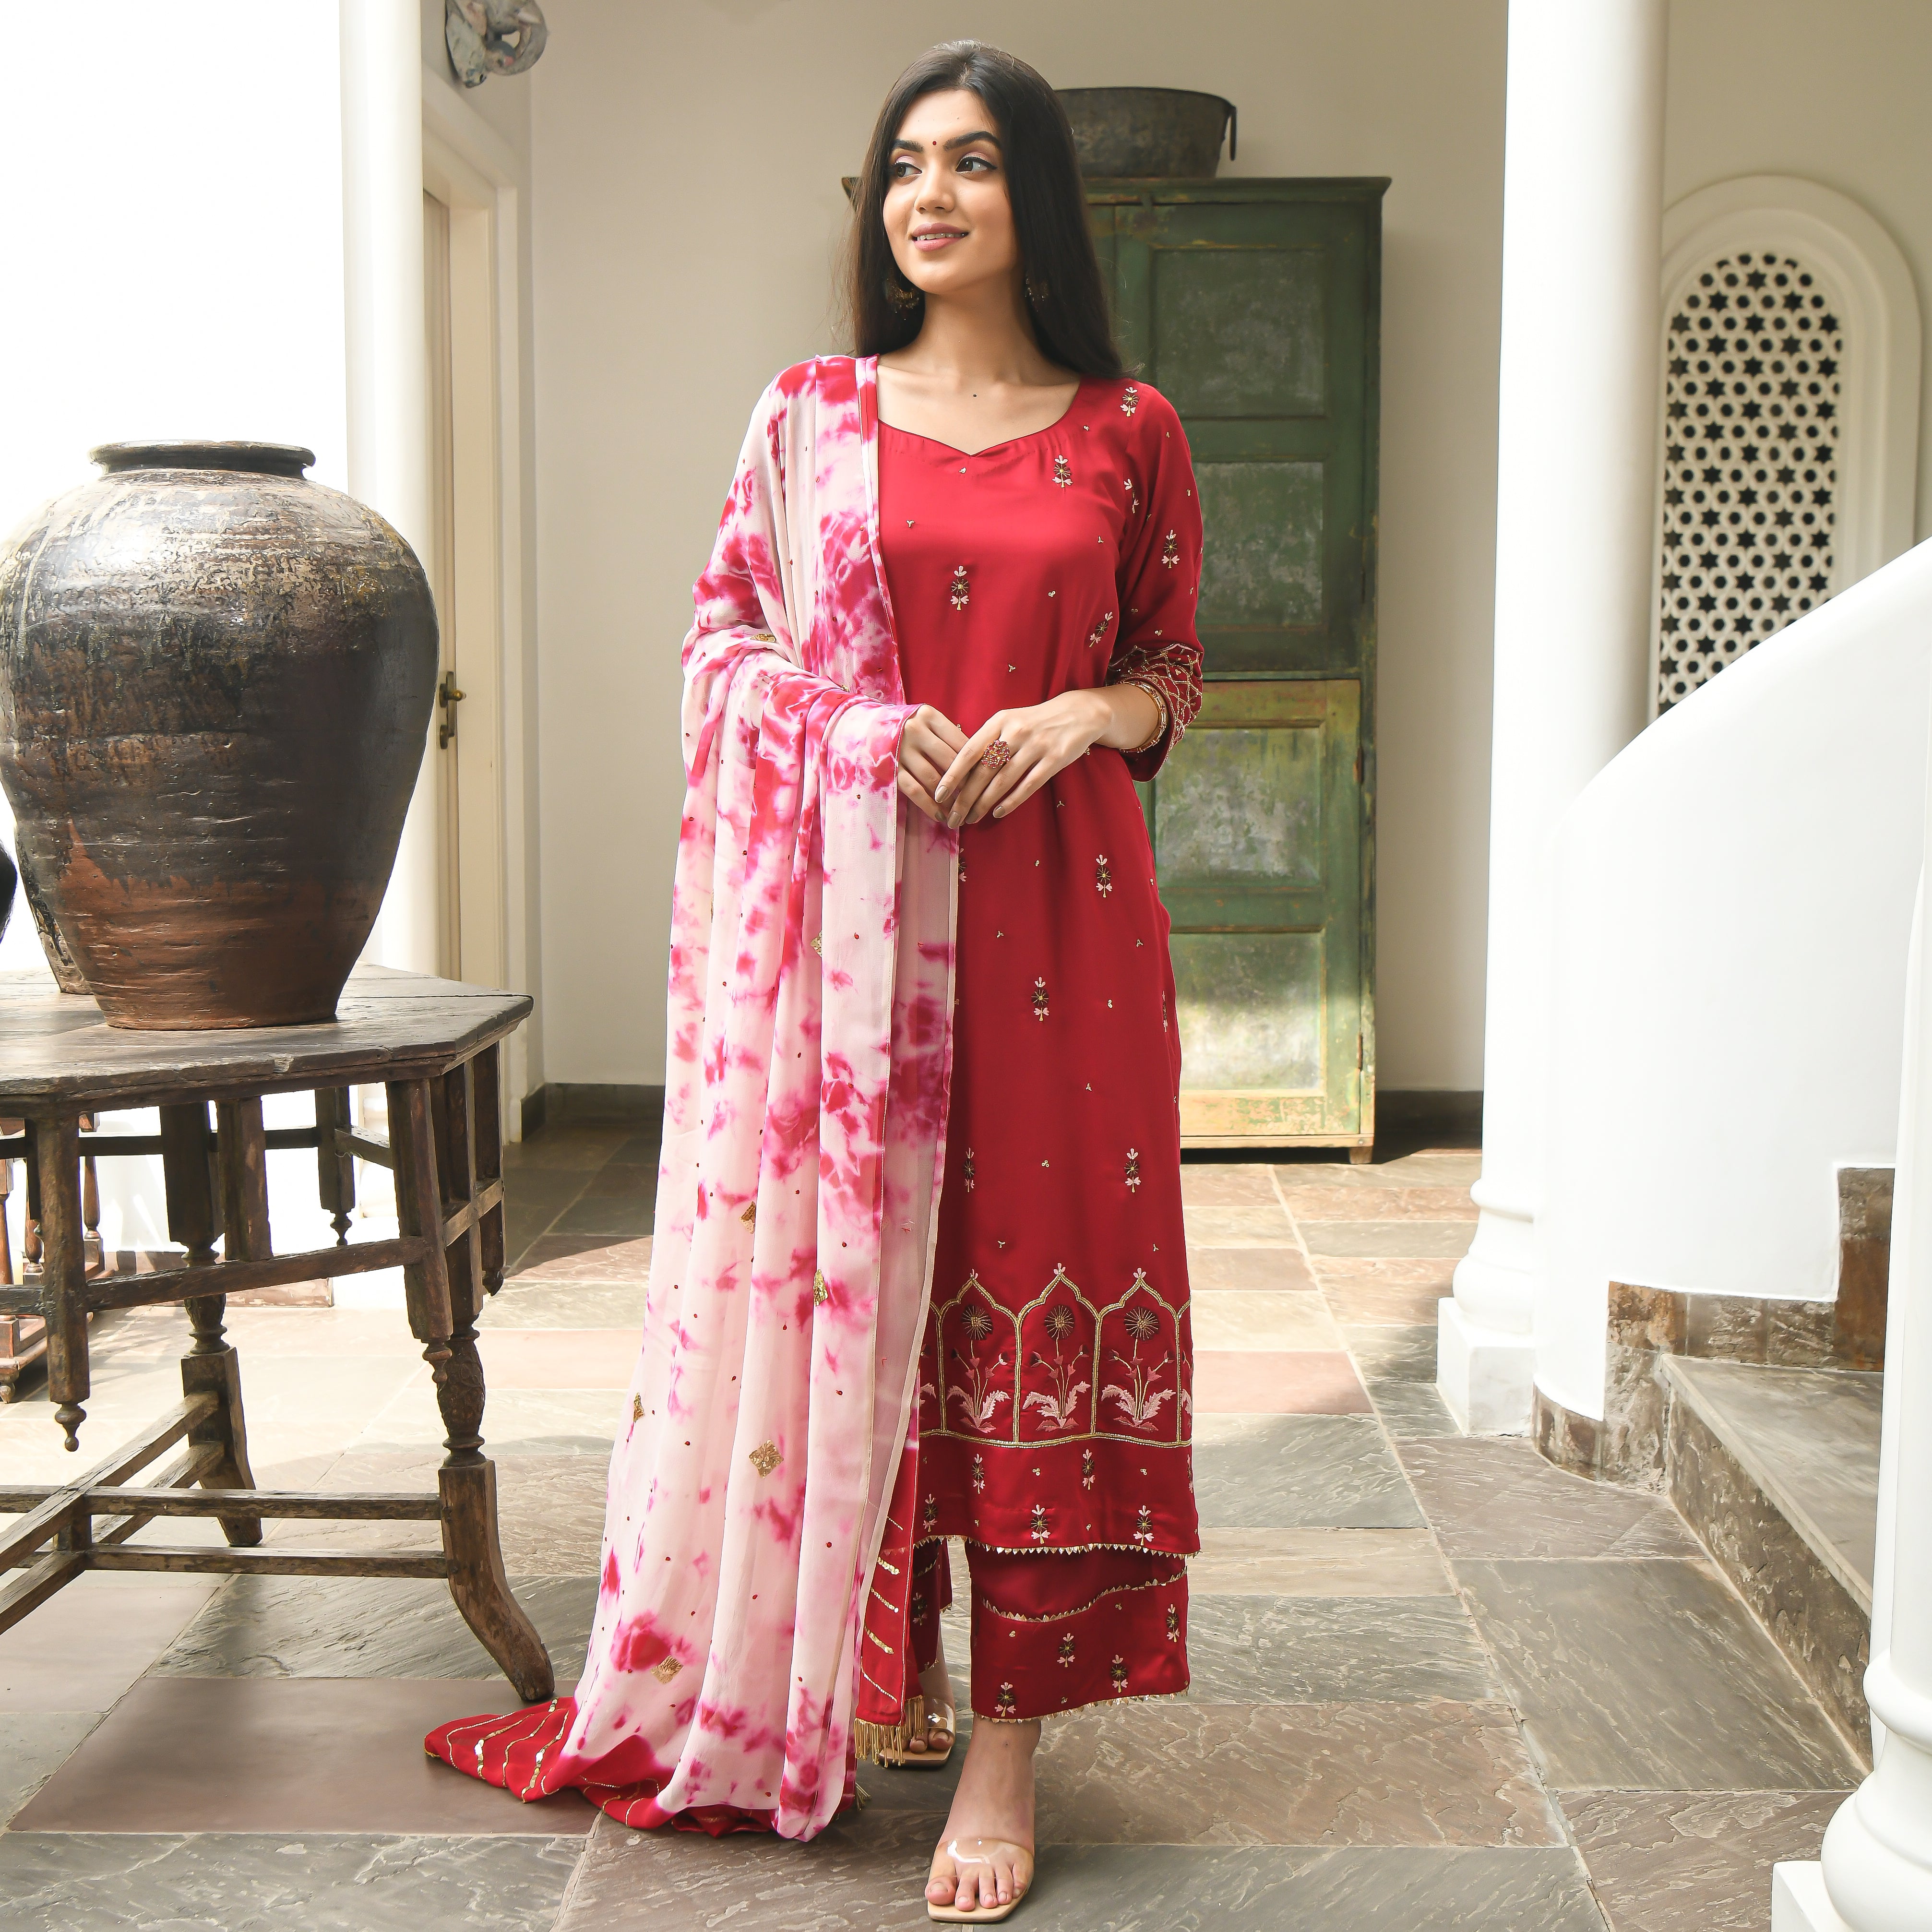  Naveli Designer Ethnic Wear Modal Satin Suit Set For Women Online